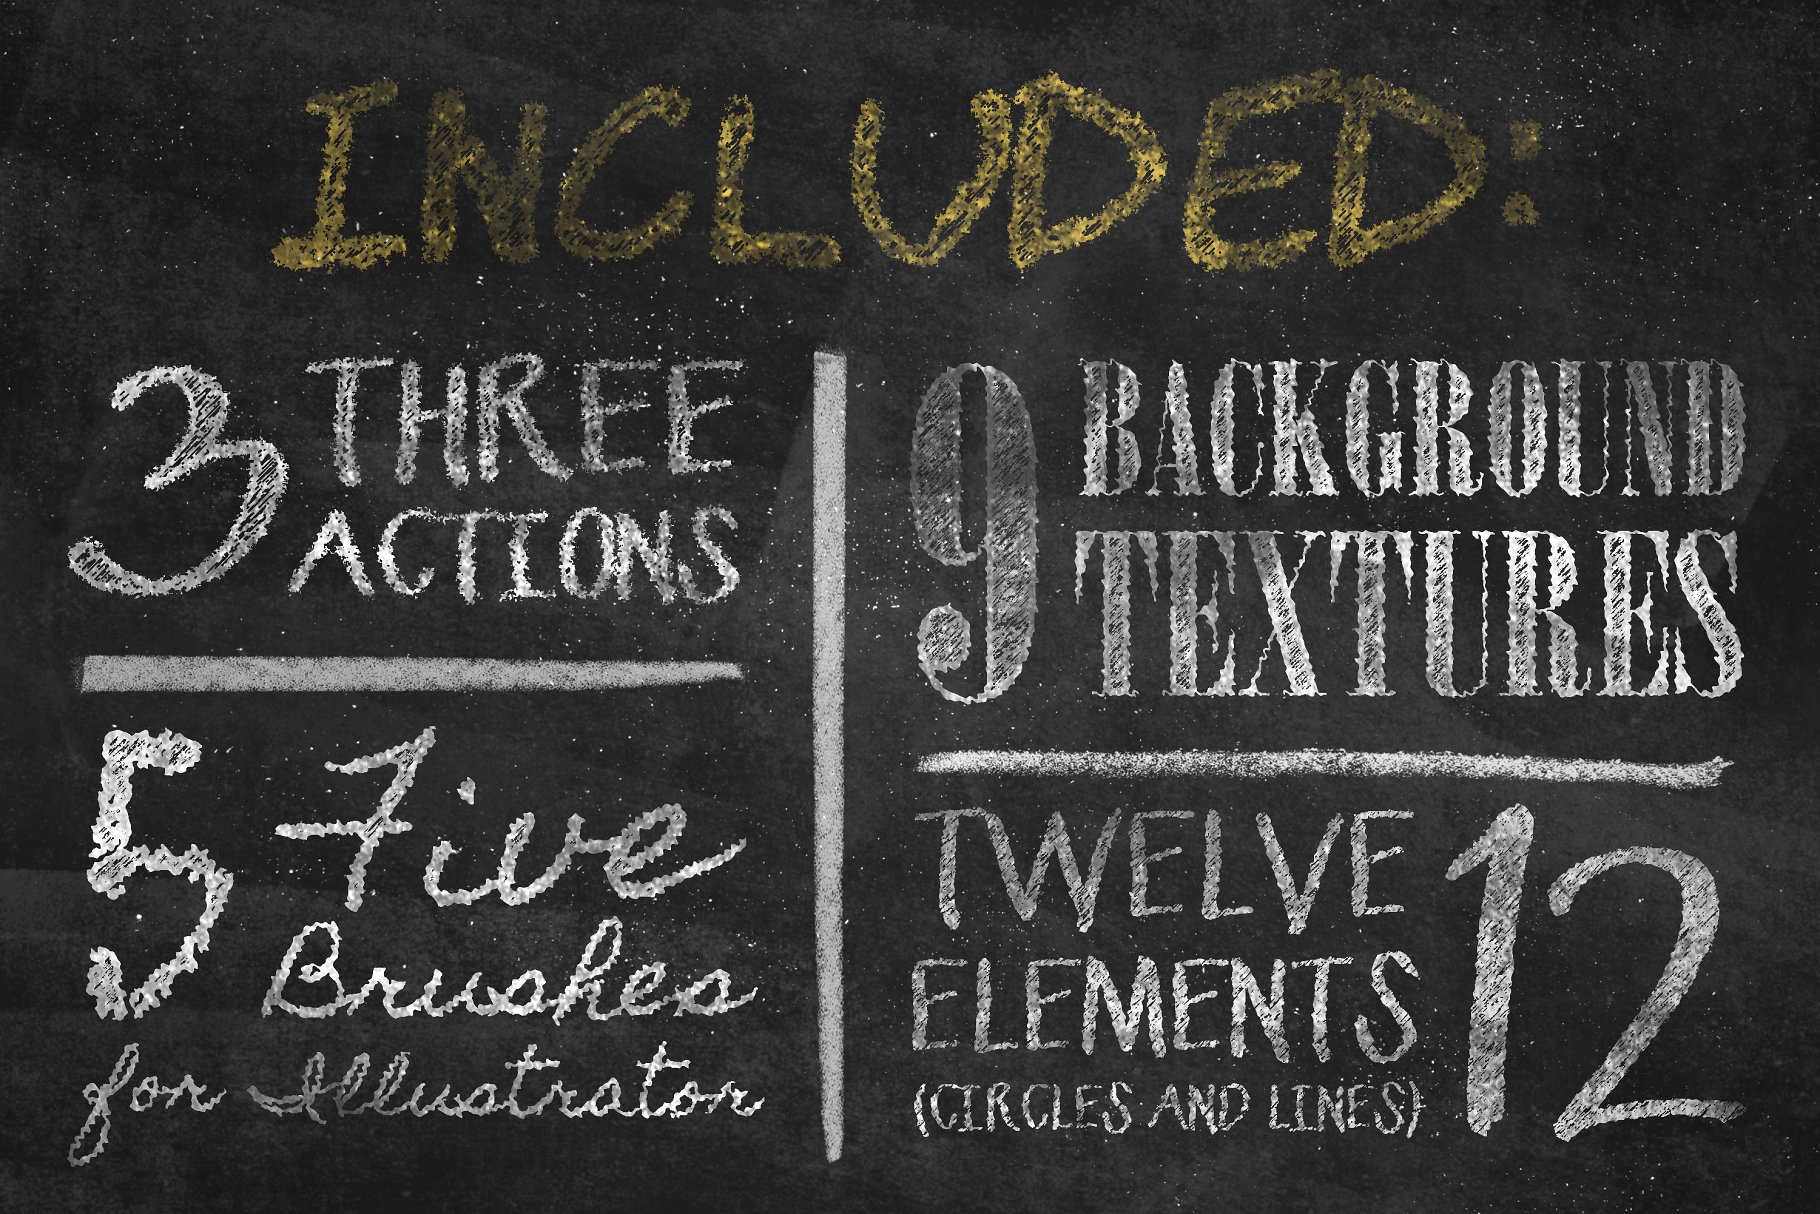 粉笔画粉笔字体样式&PS笔刷 Chalkboard Generator插图2